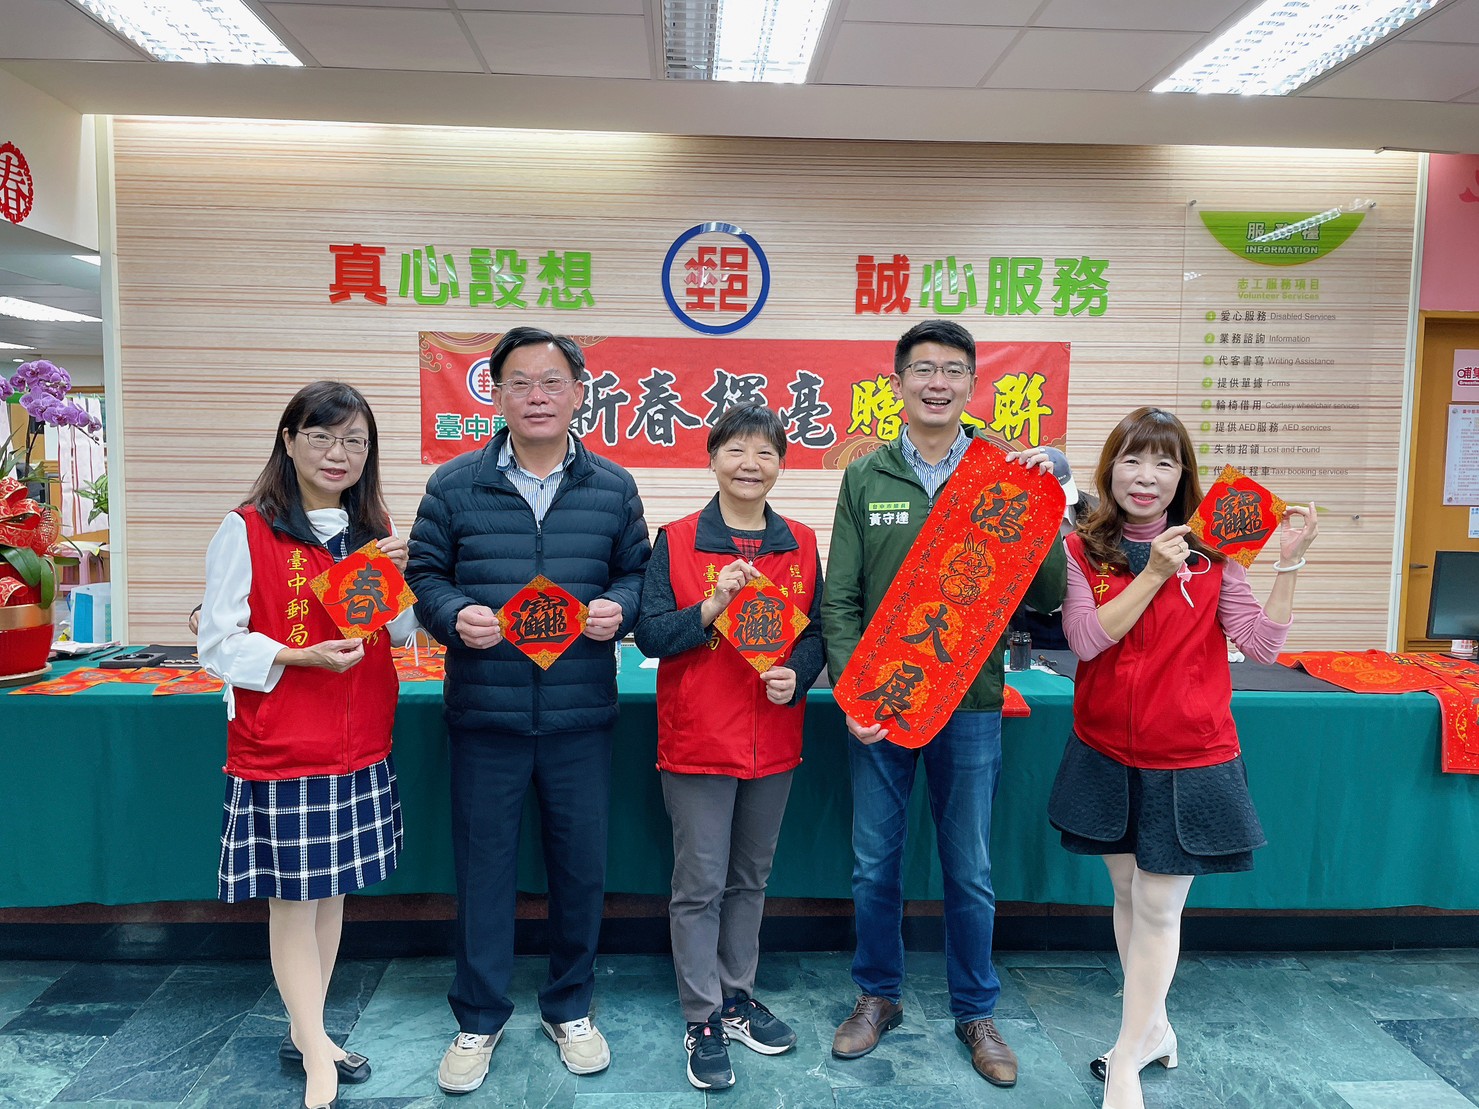 1月-臺中郵局舉辦 「新春揮毫贈春聯 口腔保健一起來」活動